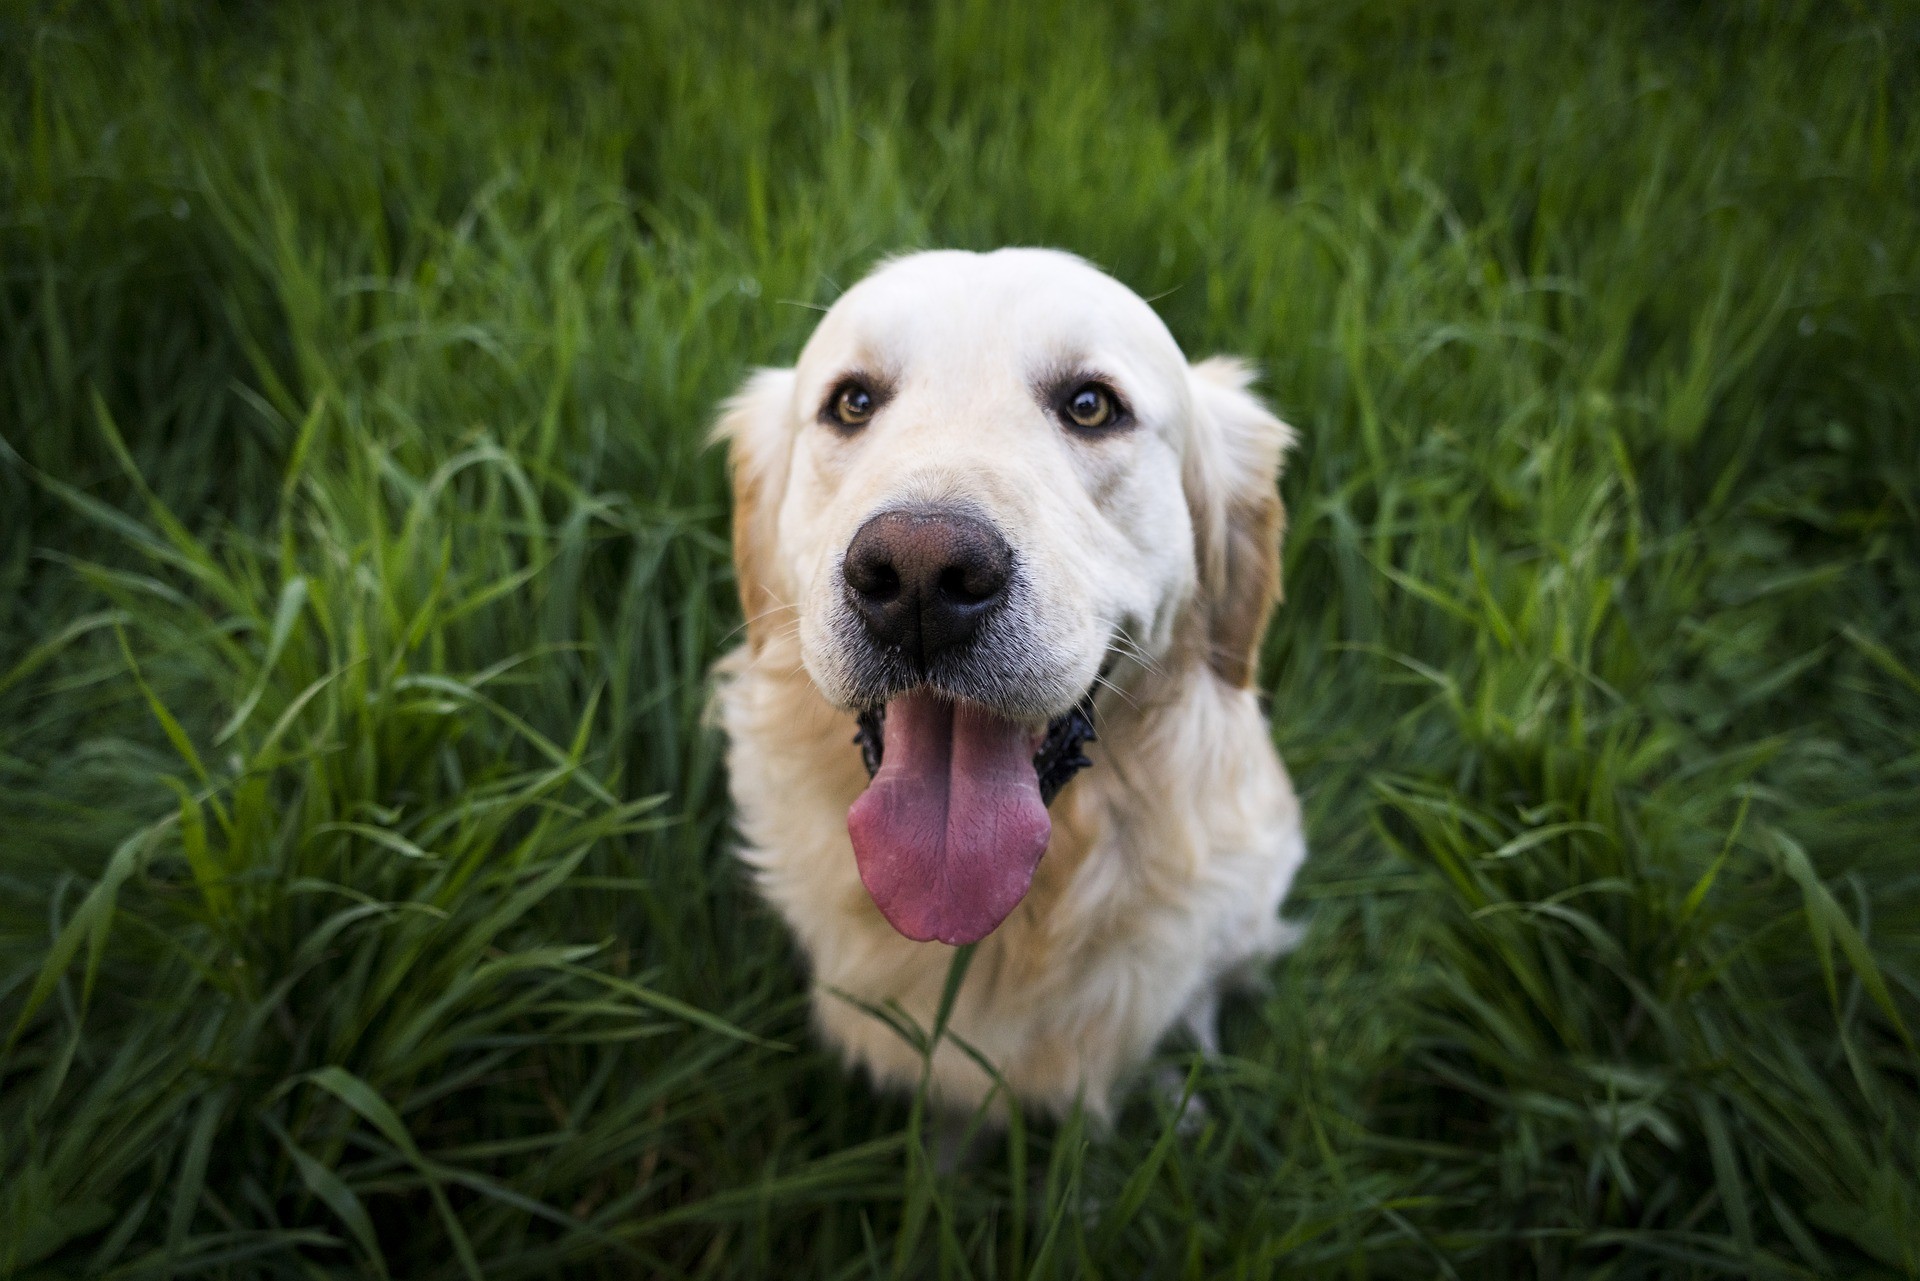 Acredite: Golden Retriever são originalmente cães de caça  (Foto: Pixabay)